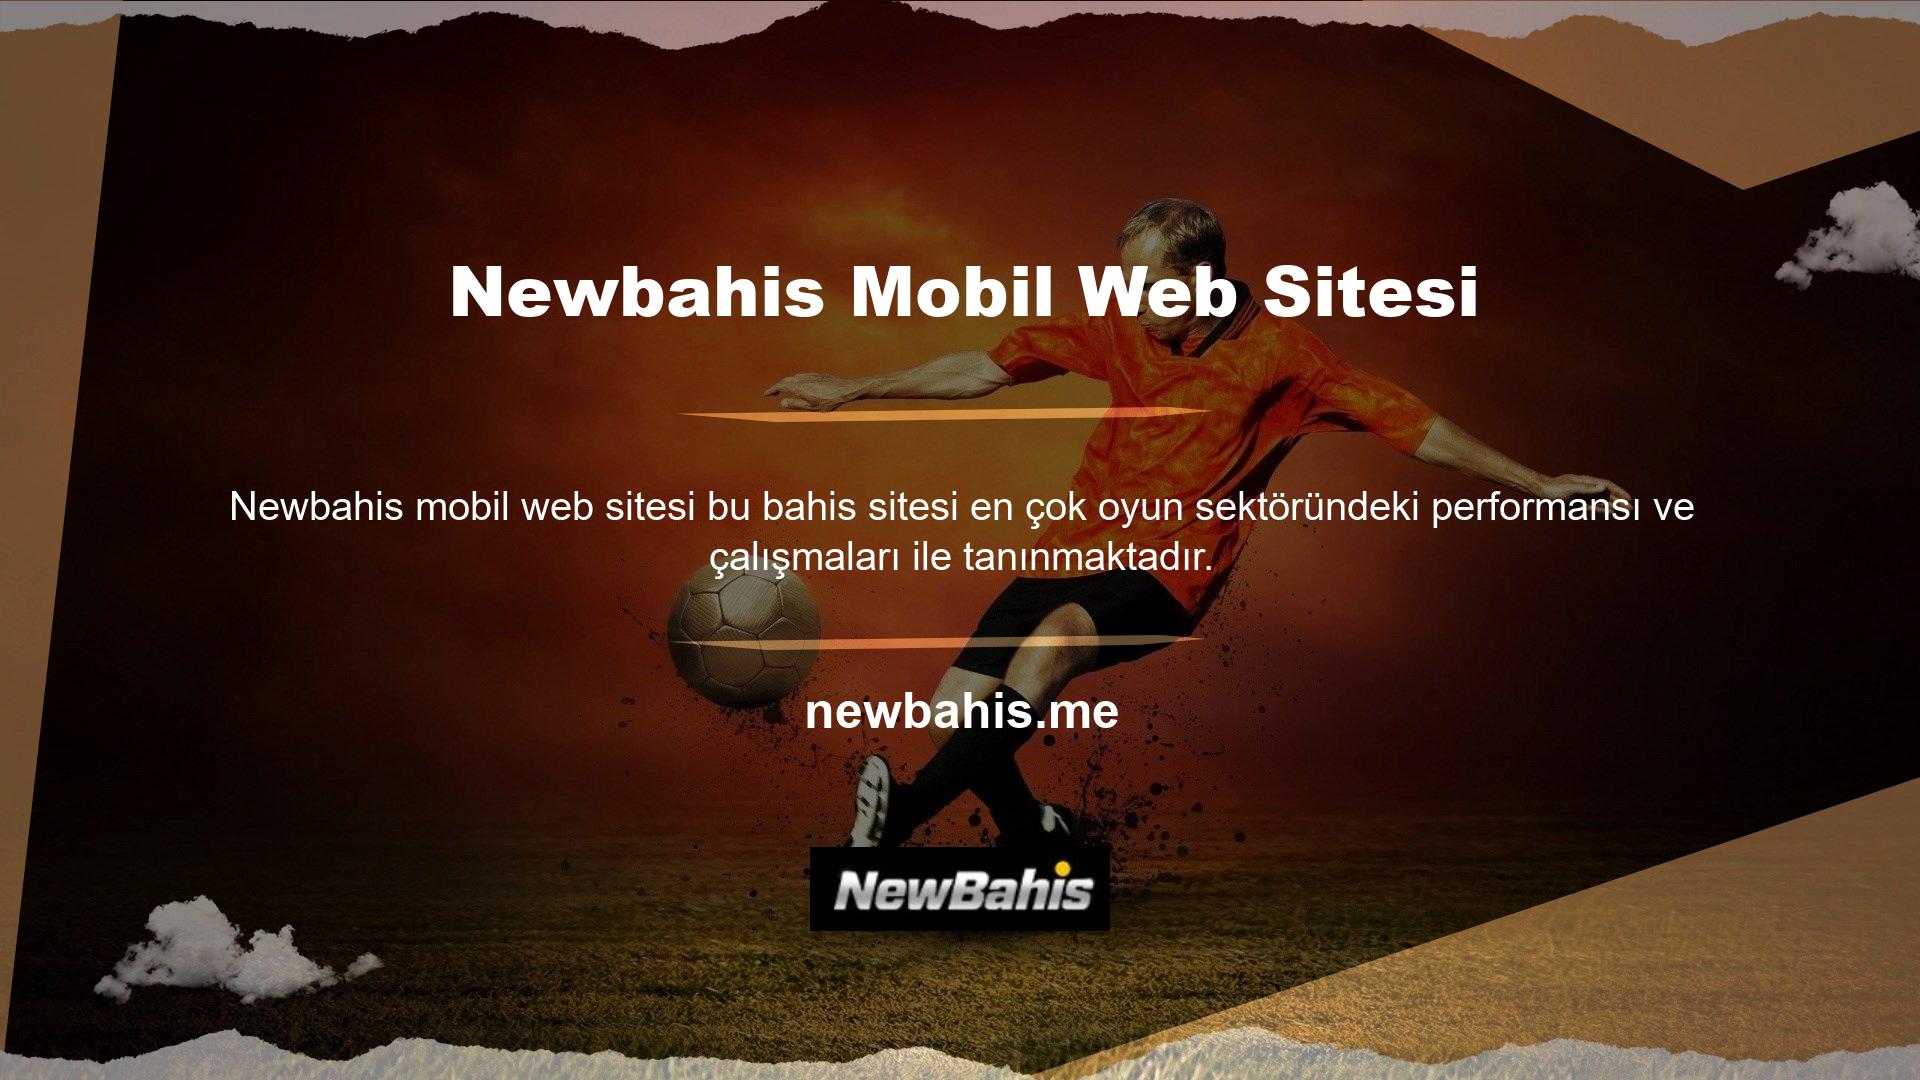 Kesintisiz hizmet özelliği sayesinde oyuncular sistemden sorunsuz Newbahis mobil web sitesi hizmet alabilirler